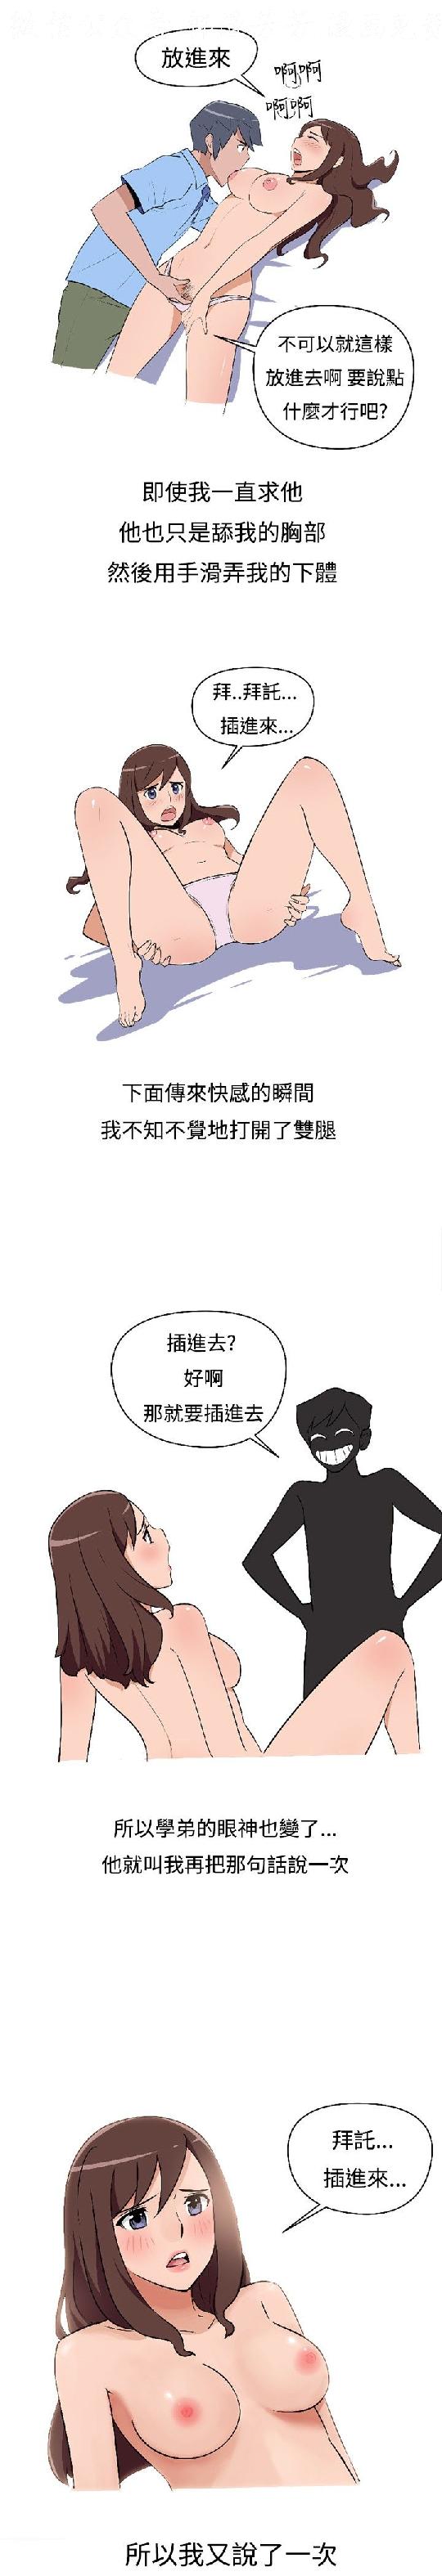 調教女大生【中文】 page 18 full